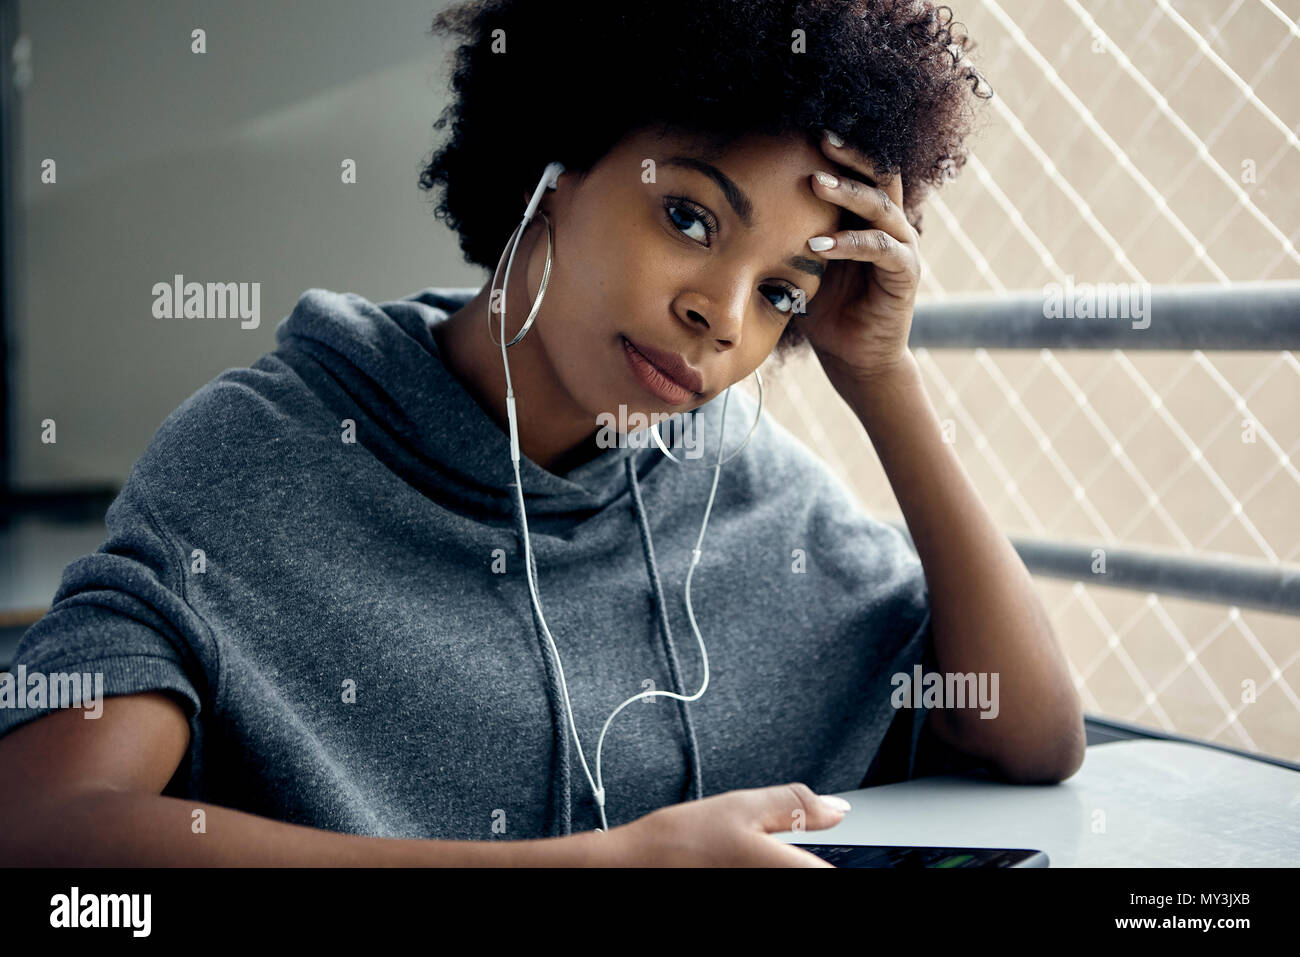 Mujer joven escuchando auriculares, sosteniendo la cabeza, Retrato Foto de stock